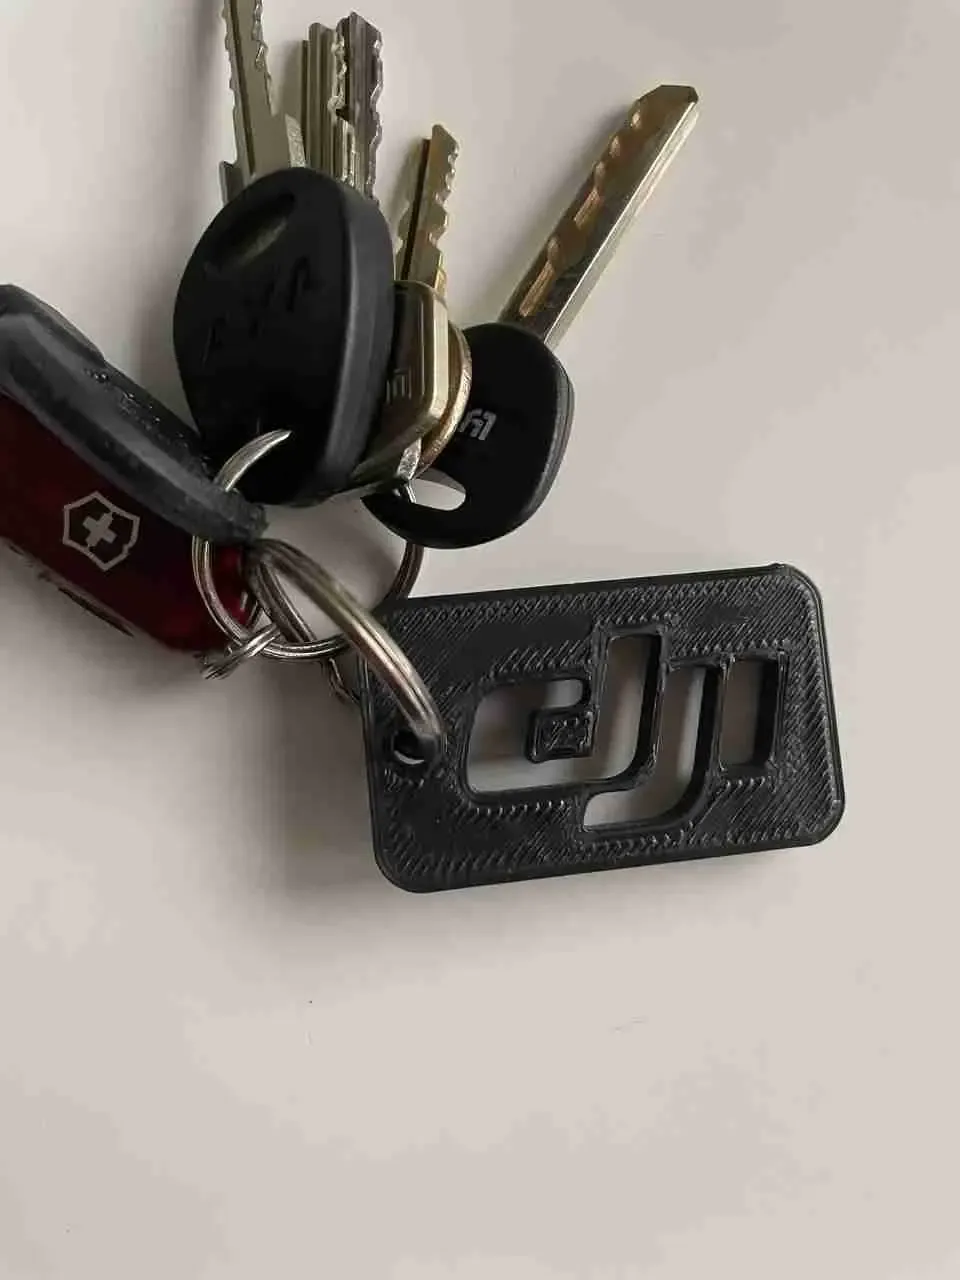 DJI logo keychain